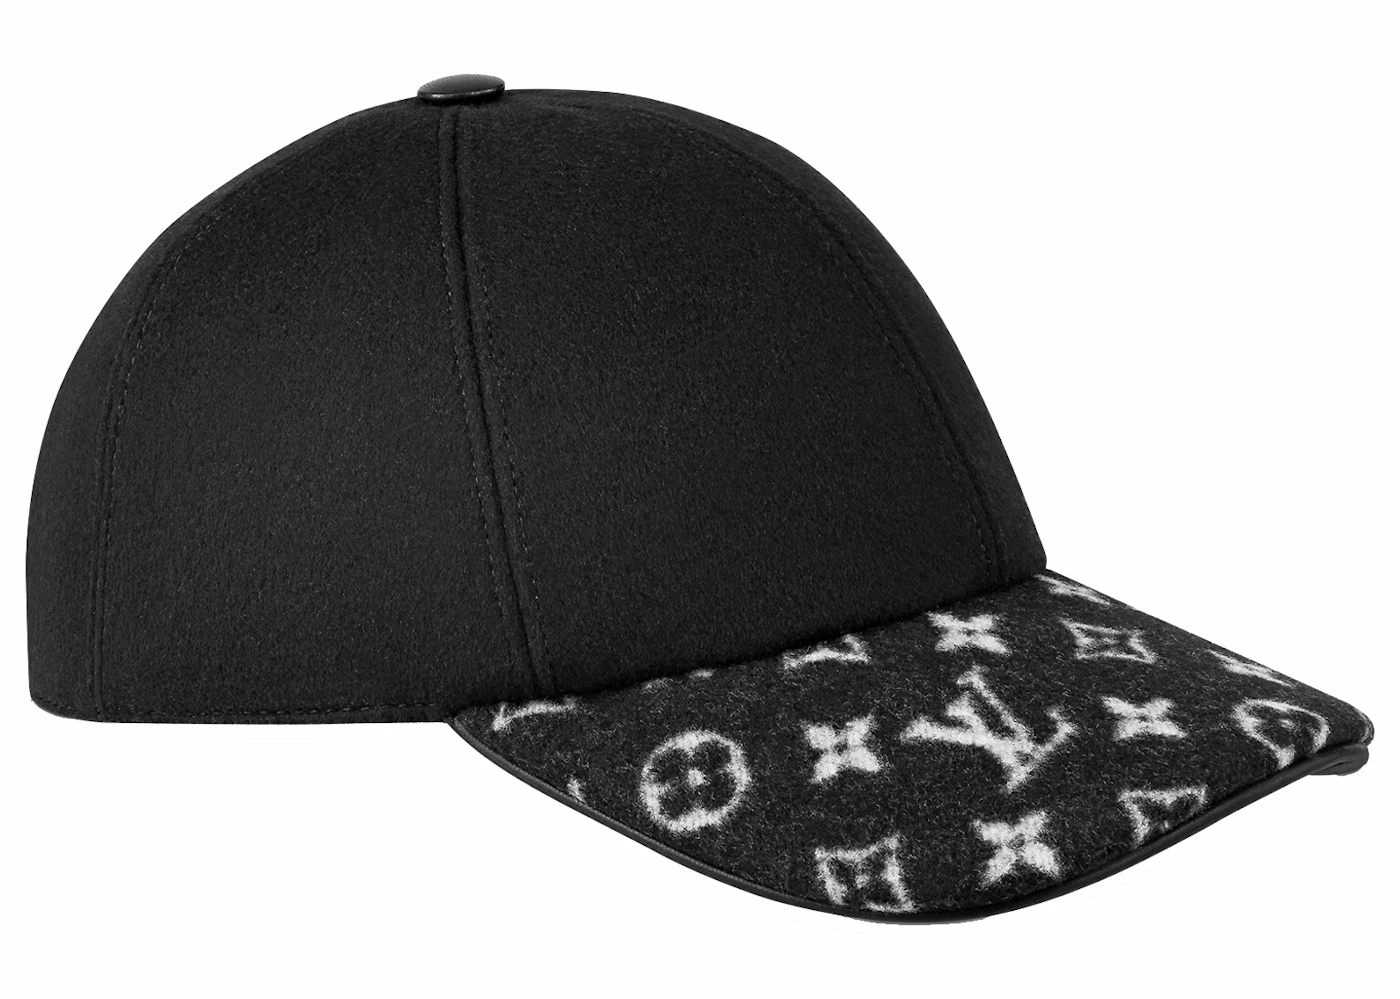 25 Best Supreme hat ideas  supreme hat, lv fashion, louis vuitton